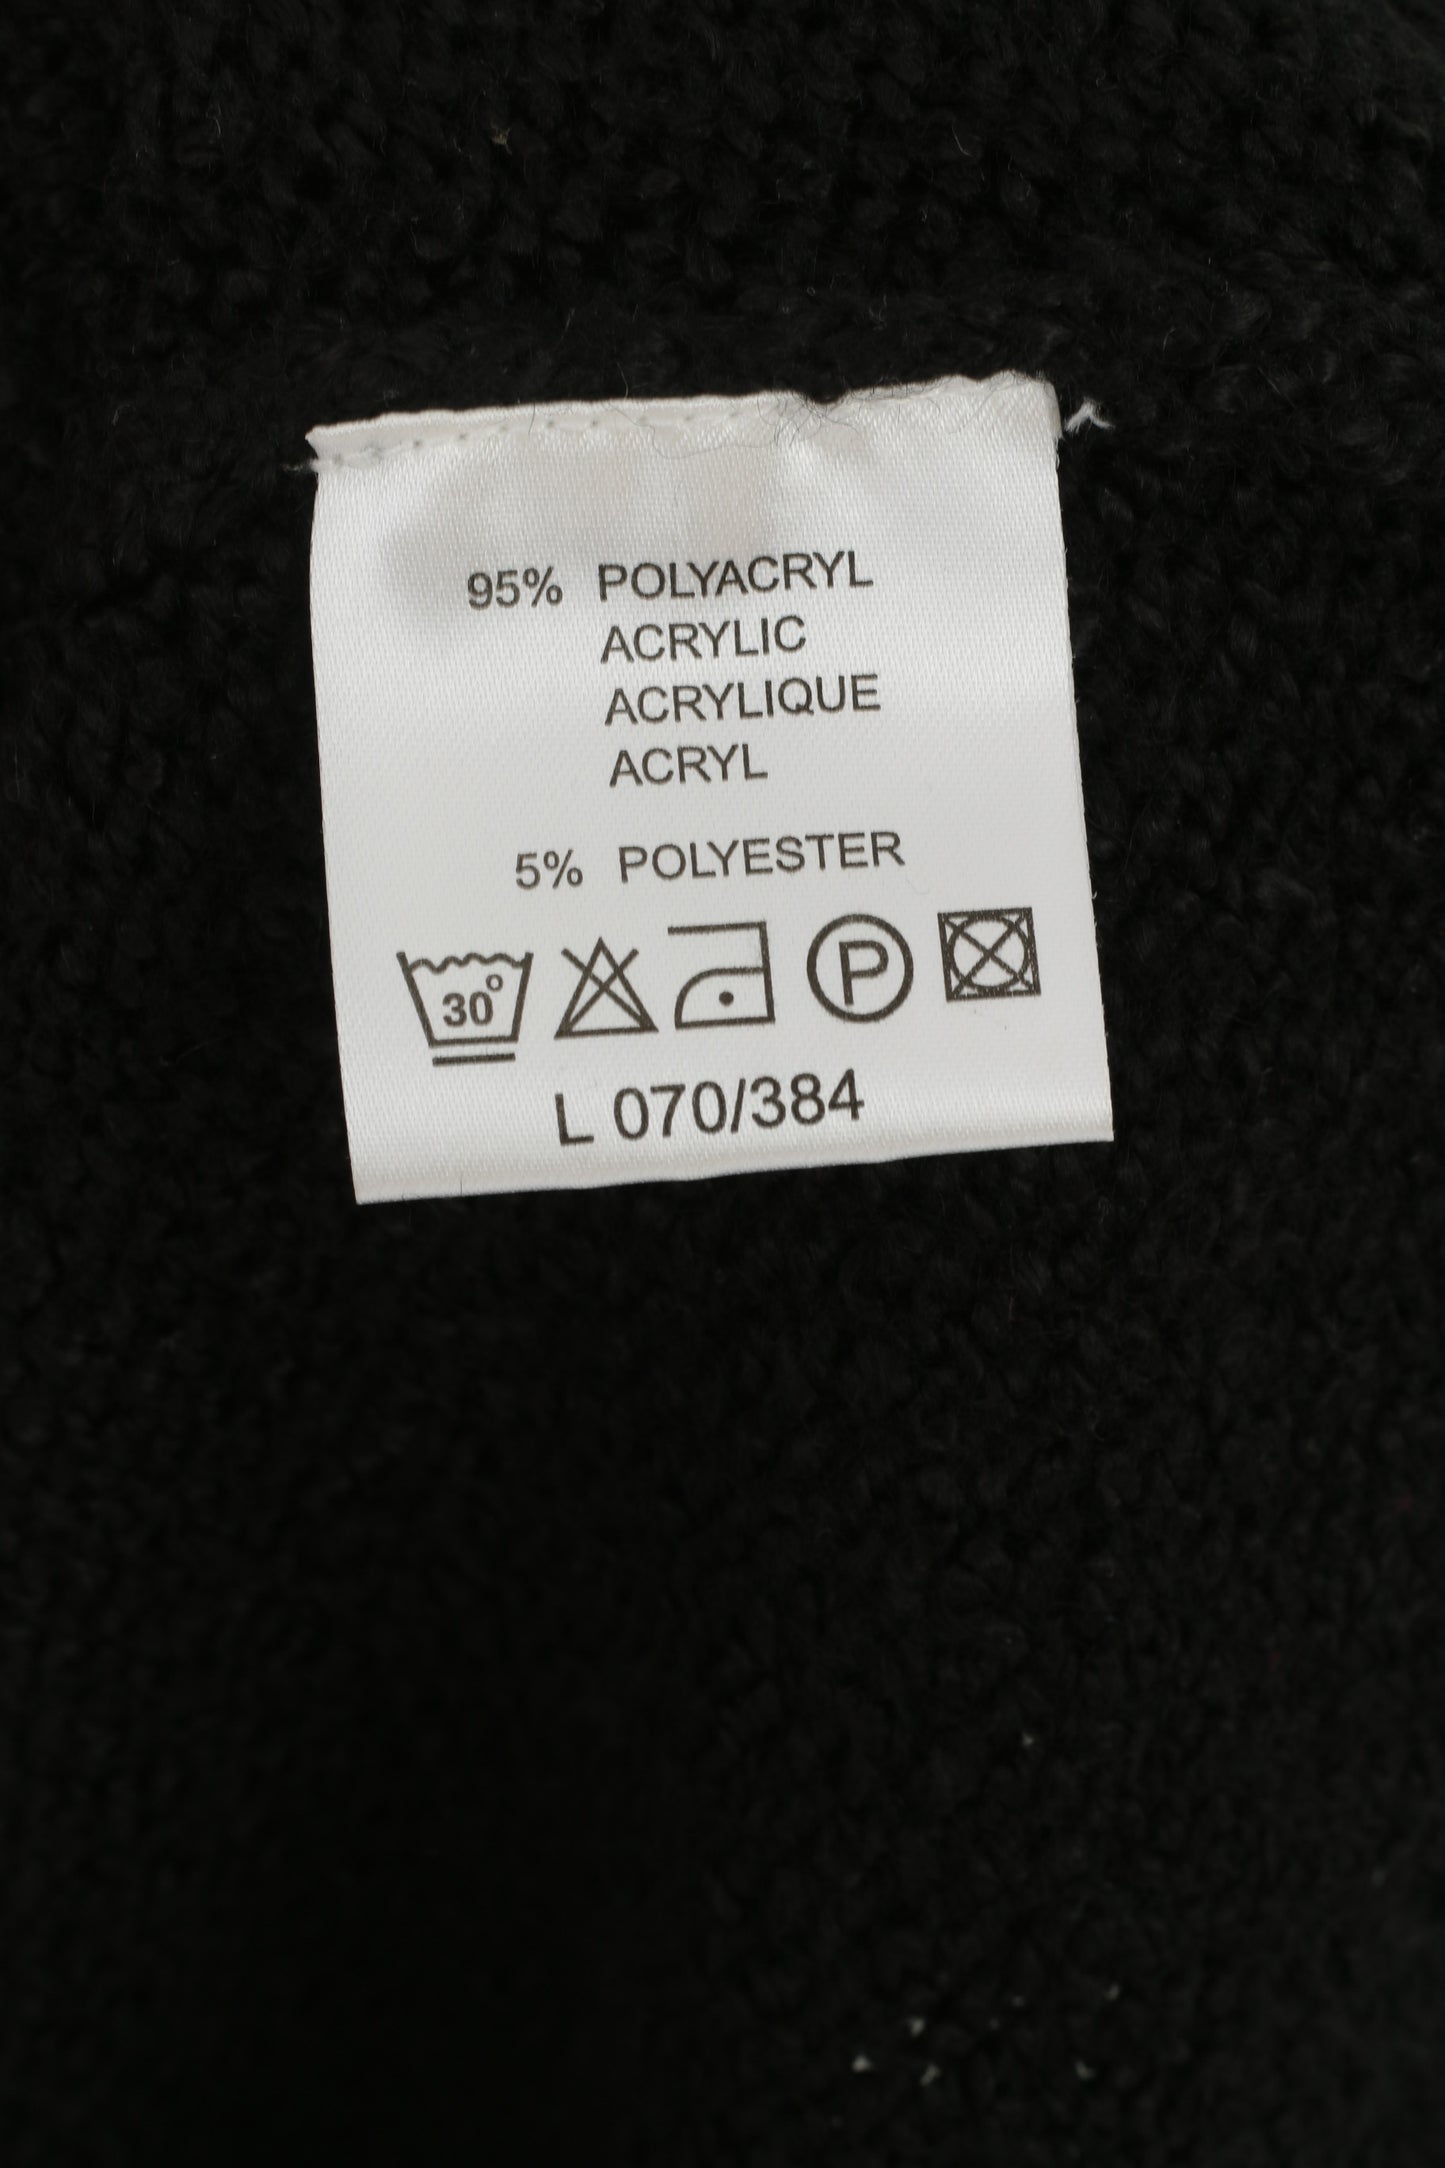 Il suo cardigan XL da donna in maglia Maglione classico con zip intera vintage in acrilico nero